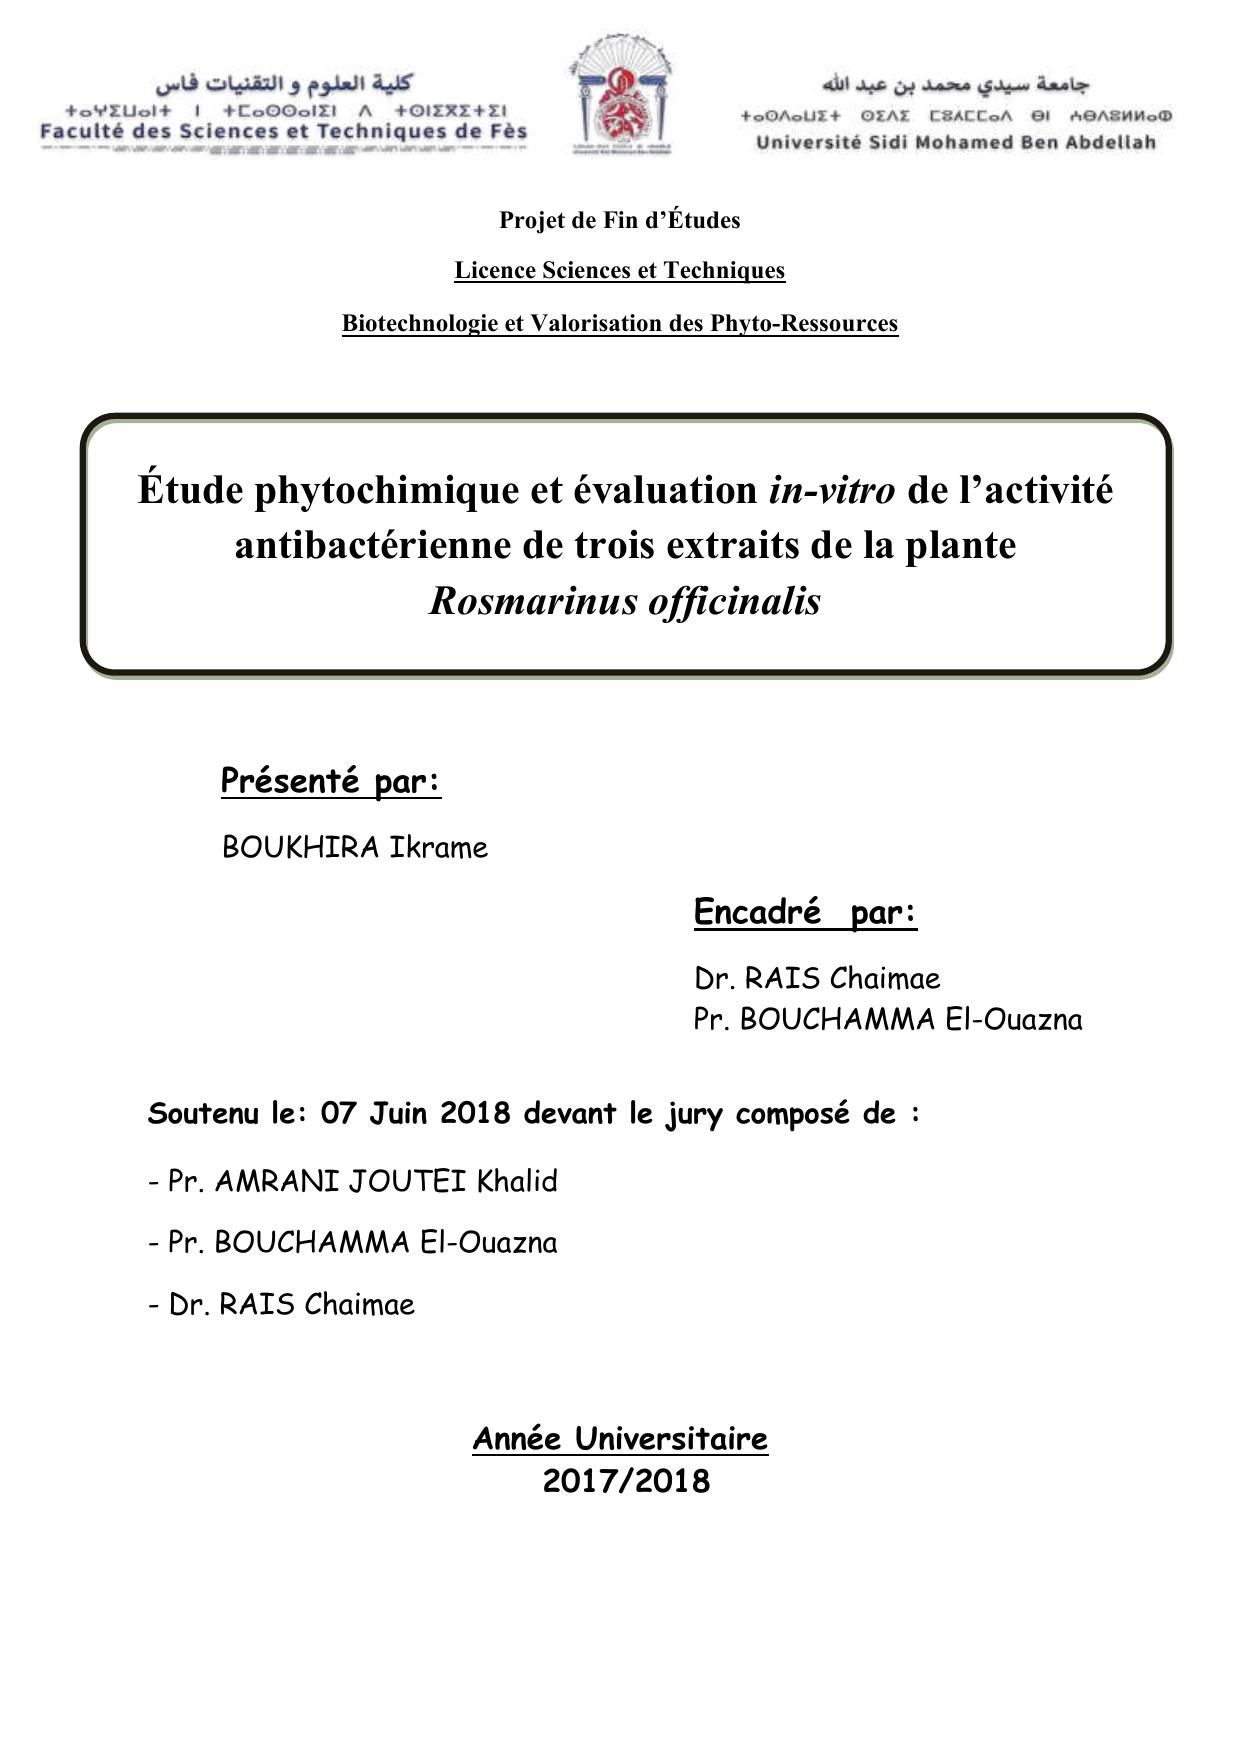 Étude phytochimique et évaluation in-vitro de l’activité antibactérienne de trois extraits de la plante Rosmarinus officinalis